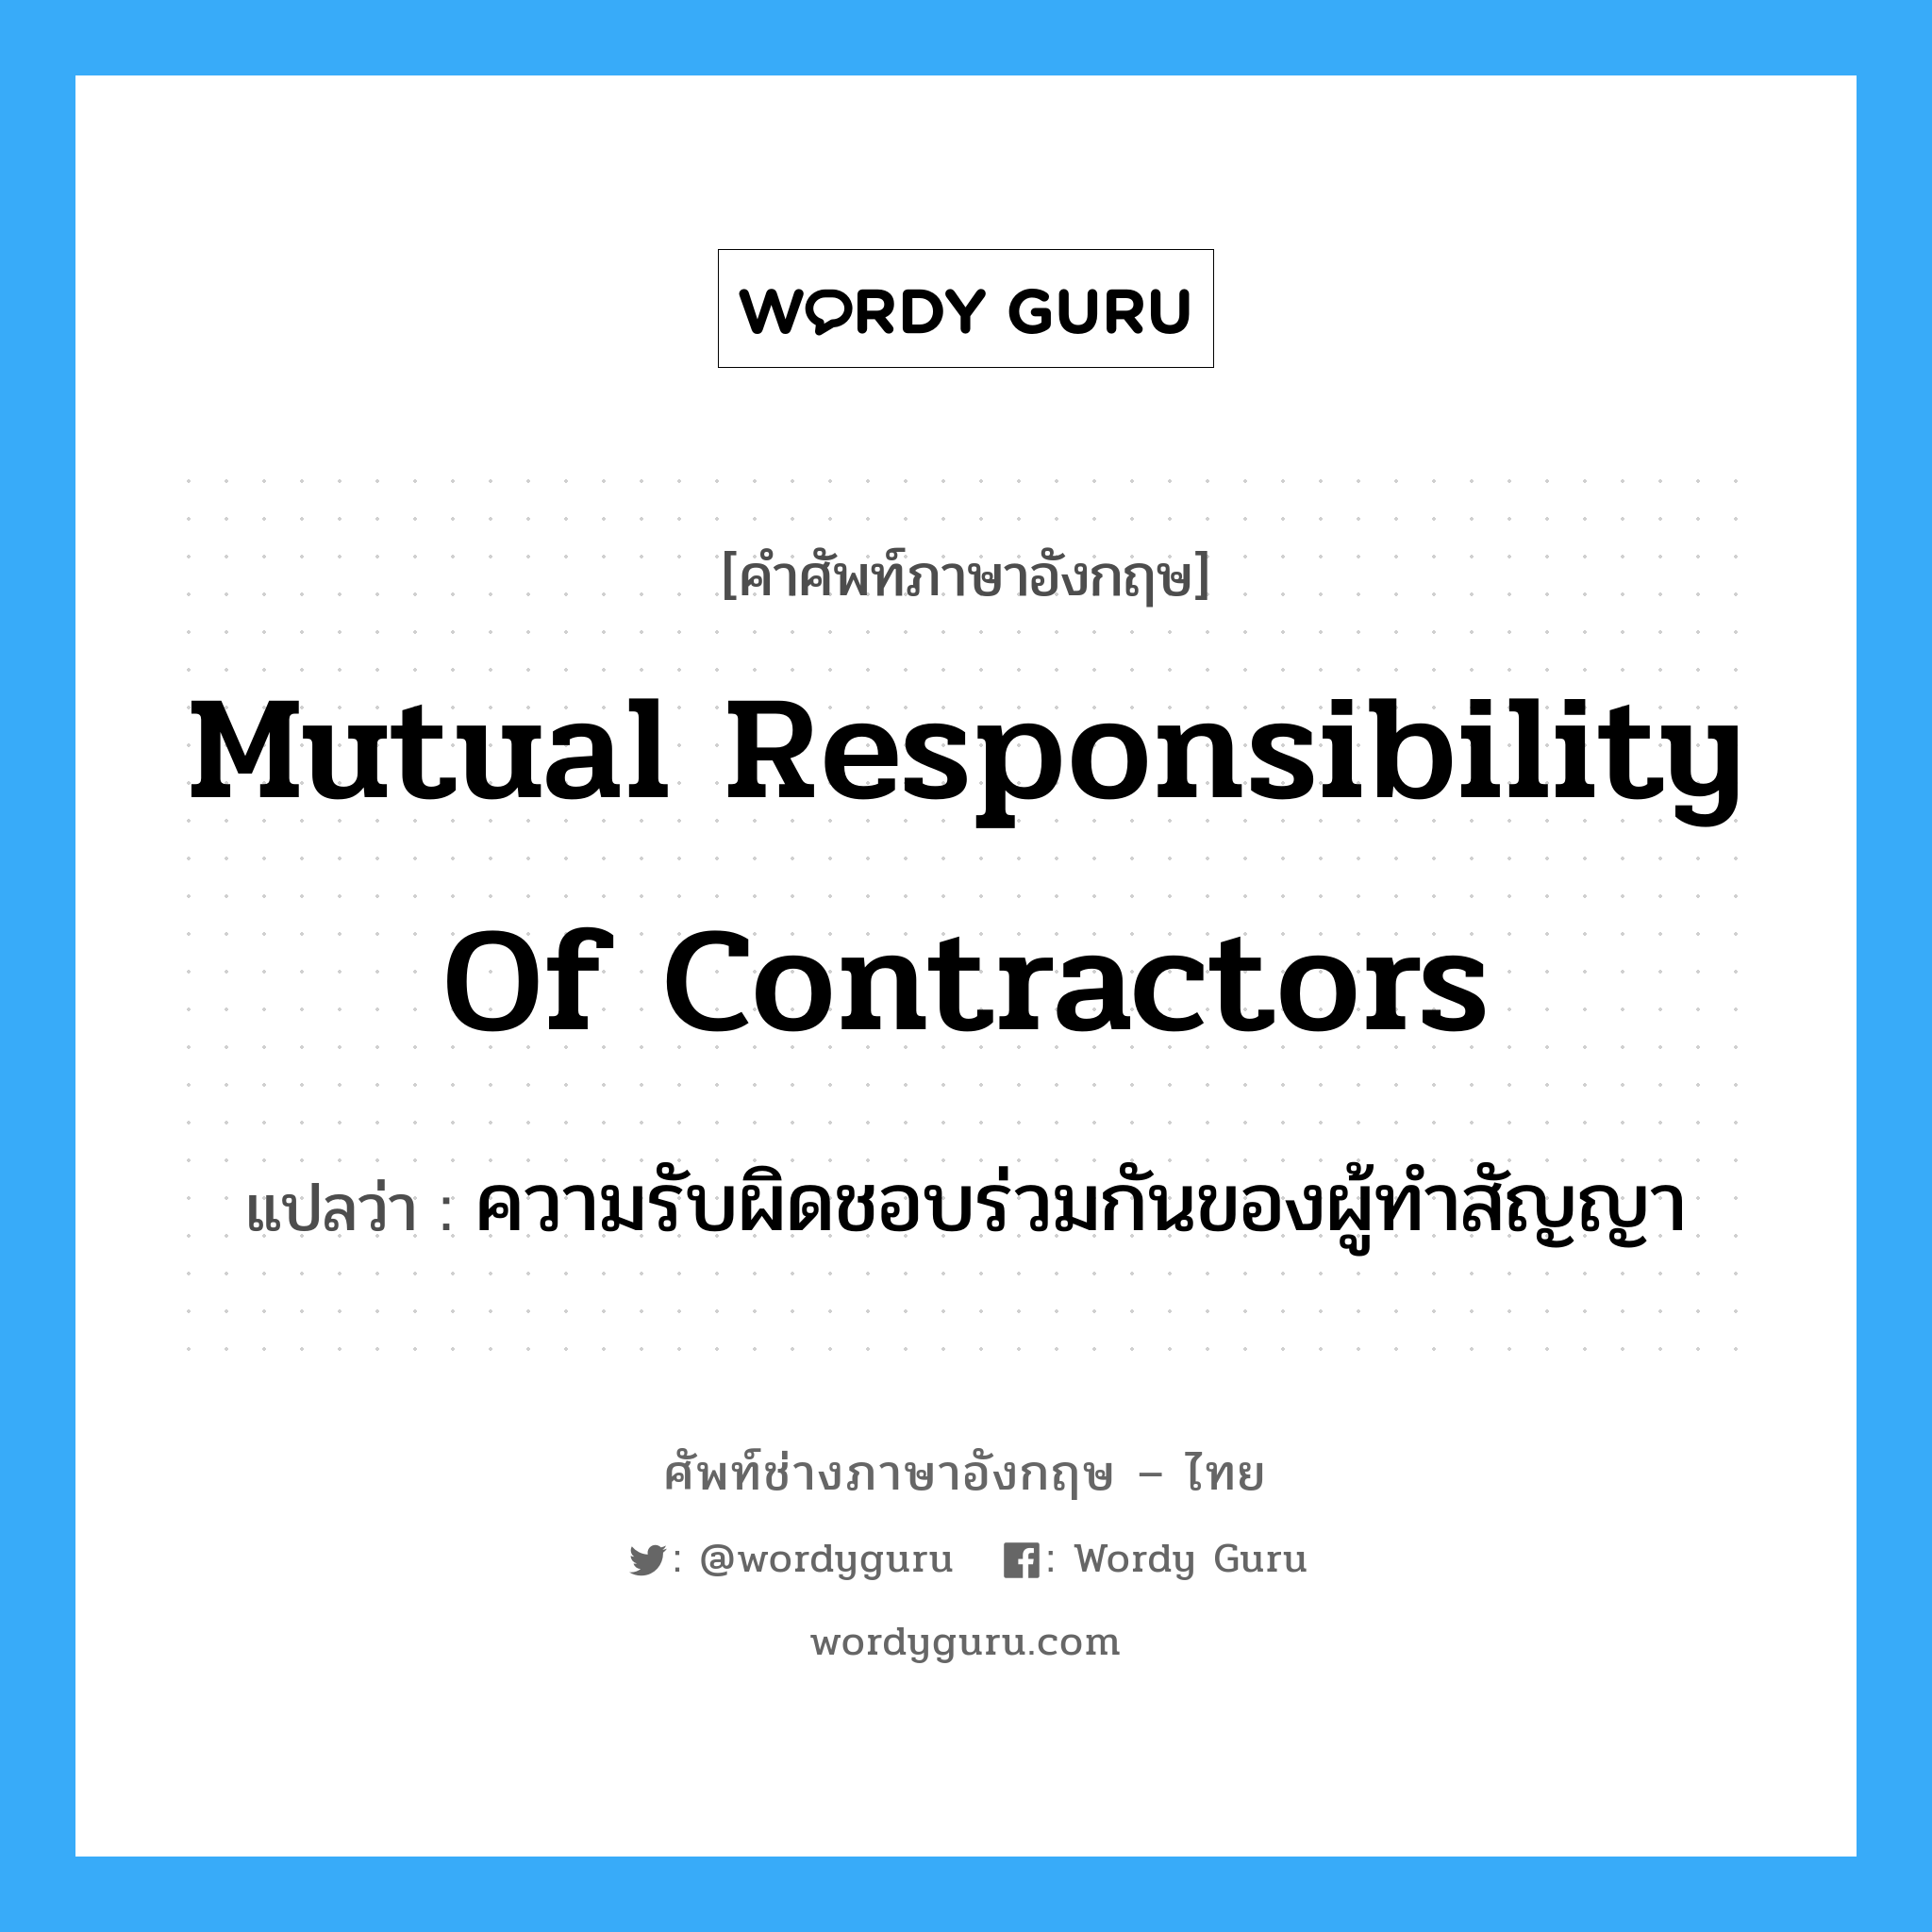 Mutual responsibility of contractors แปลว่า?, คำศัพท์ช่างภาษาอังกฤษ - ไทย Mutual responsibility of contractors คำศัพท์ภาษาอังกฤษ Mutual responsibility of contractors แปลว่า ความรับผิดชอบร่วมกันของผู้ทำสัญญา